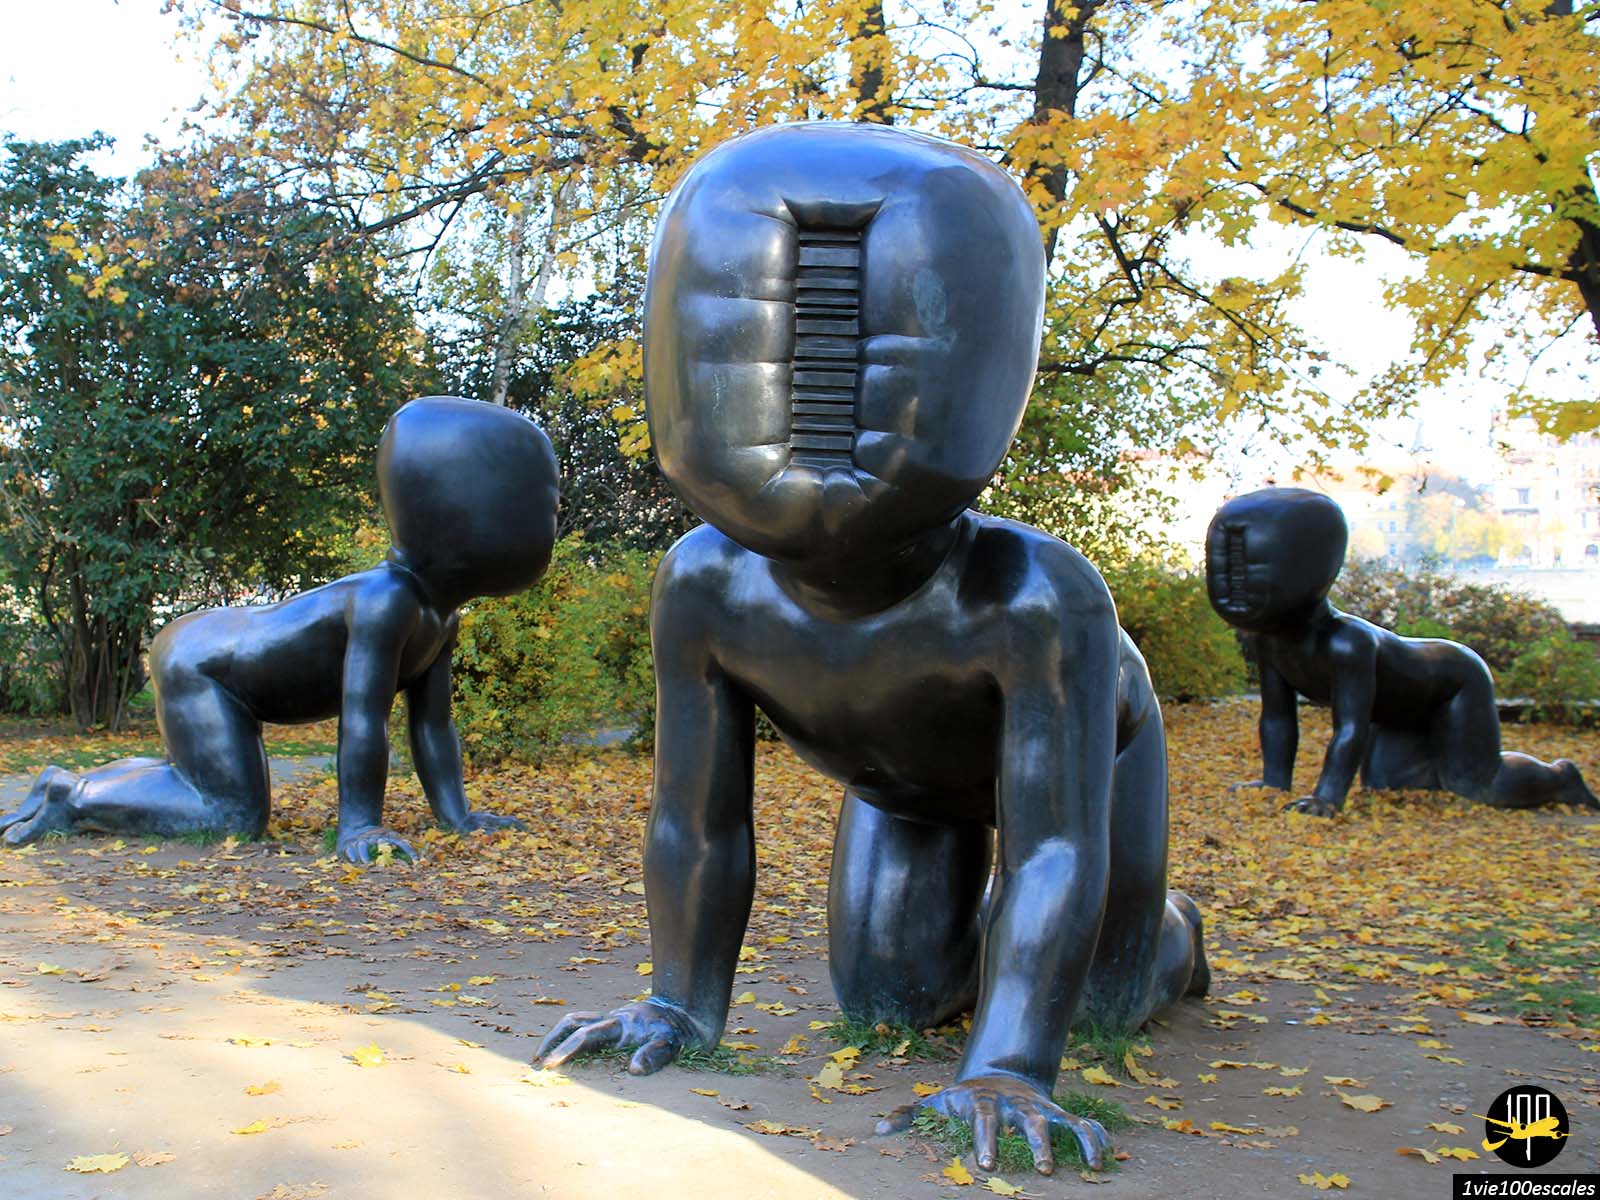 Trois gros bébé bronze sculptures de l'artiste tchèque David Černý dans un parc sur l'île Kampa, à Prague, en République tchèque